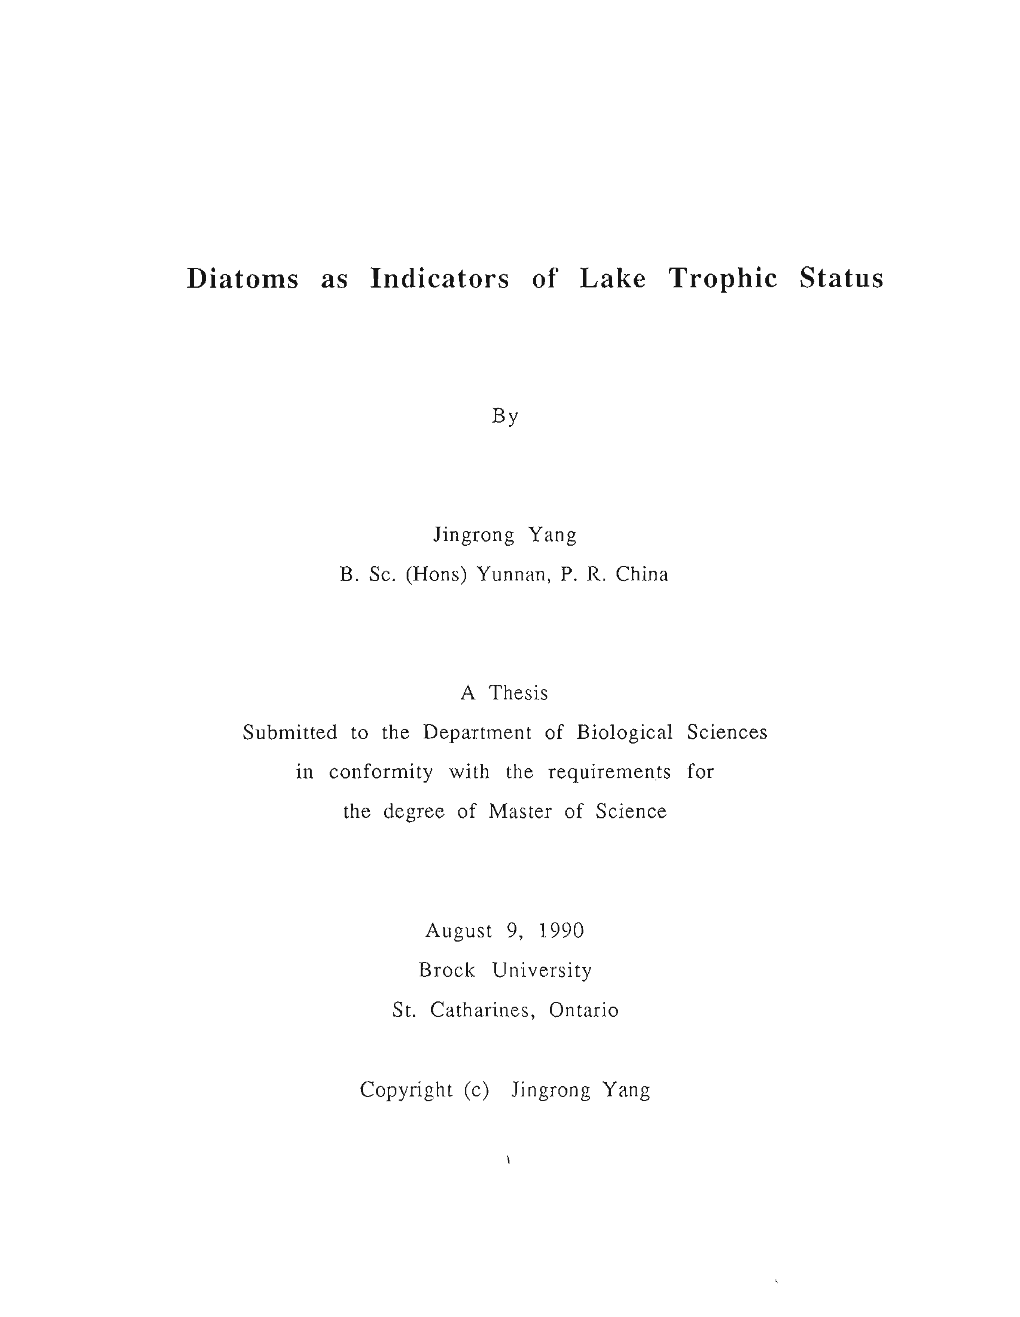 Diatoms As Indicators of Lake Trophic Status